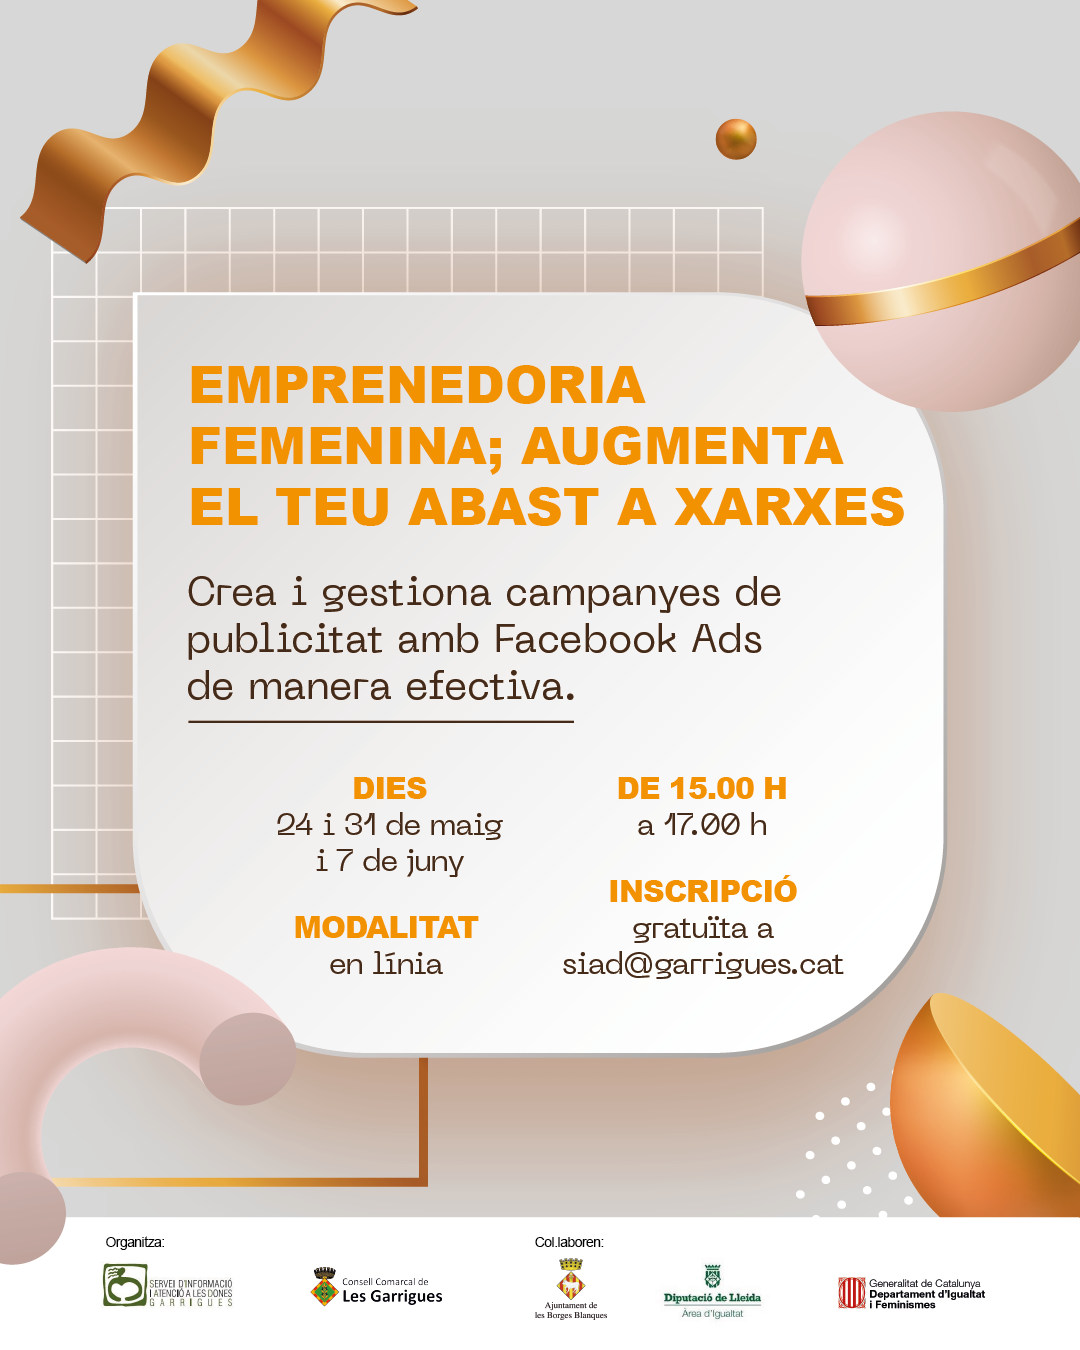 Les Garrigues organitza el curs en línia ‘Emprenedoria femenina; augmenta el teu abast a xarxes’